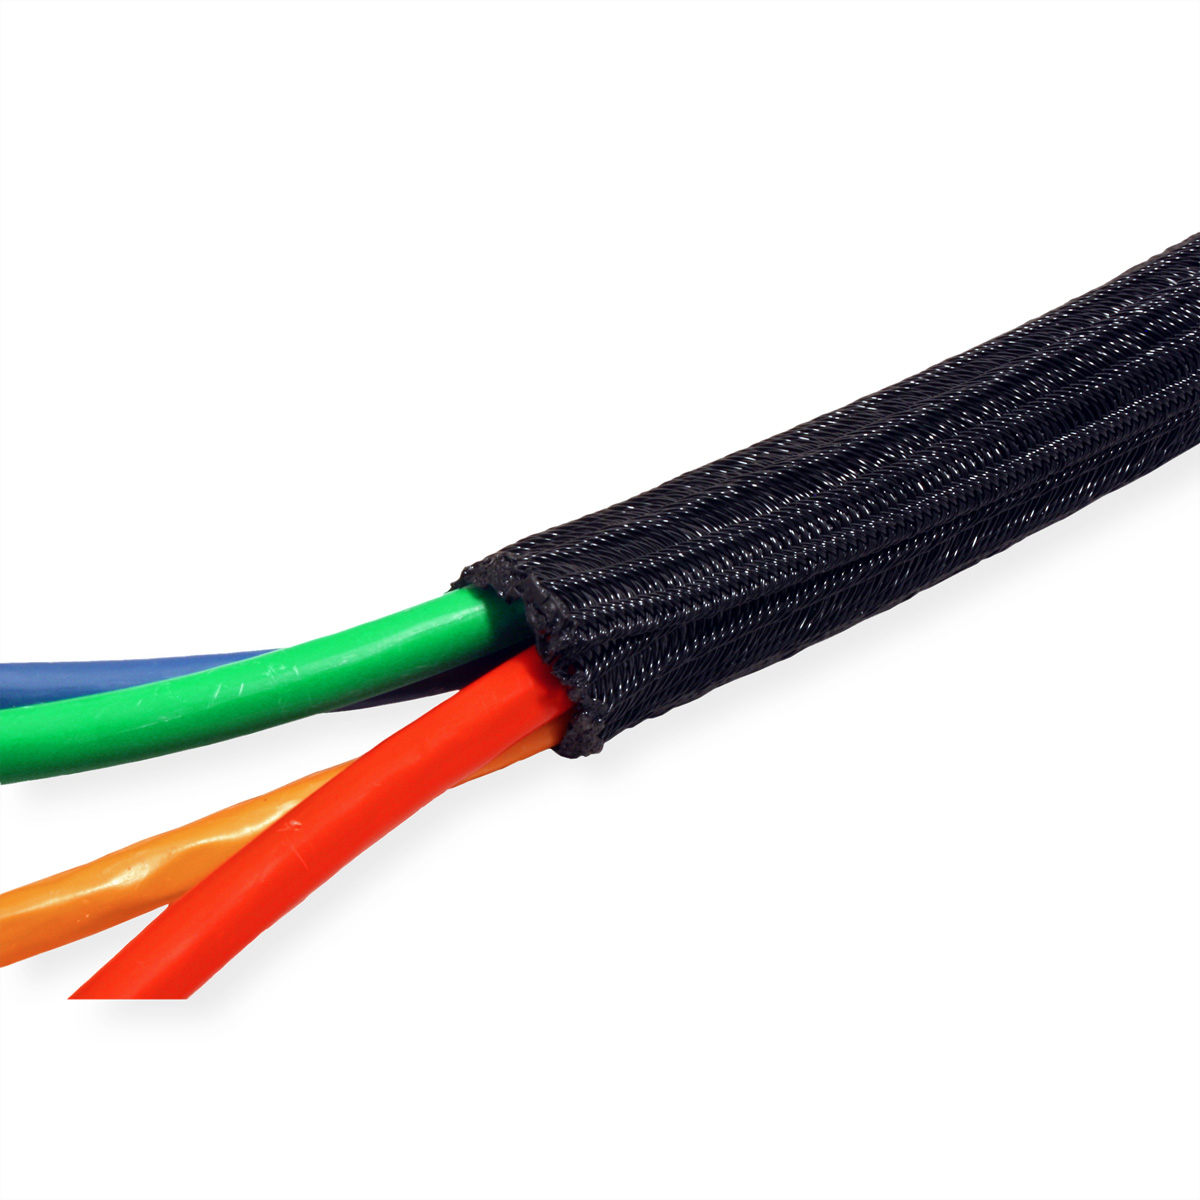 ROLINE PVC Gewebeschlauch für Kabelbündelung, schwarz selbst-schliessend Kabelbinder